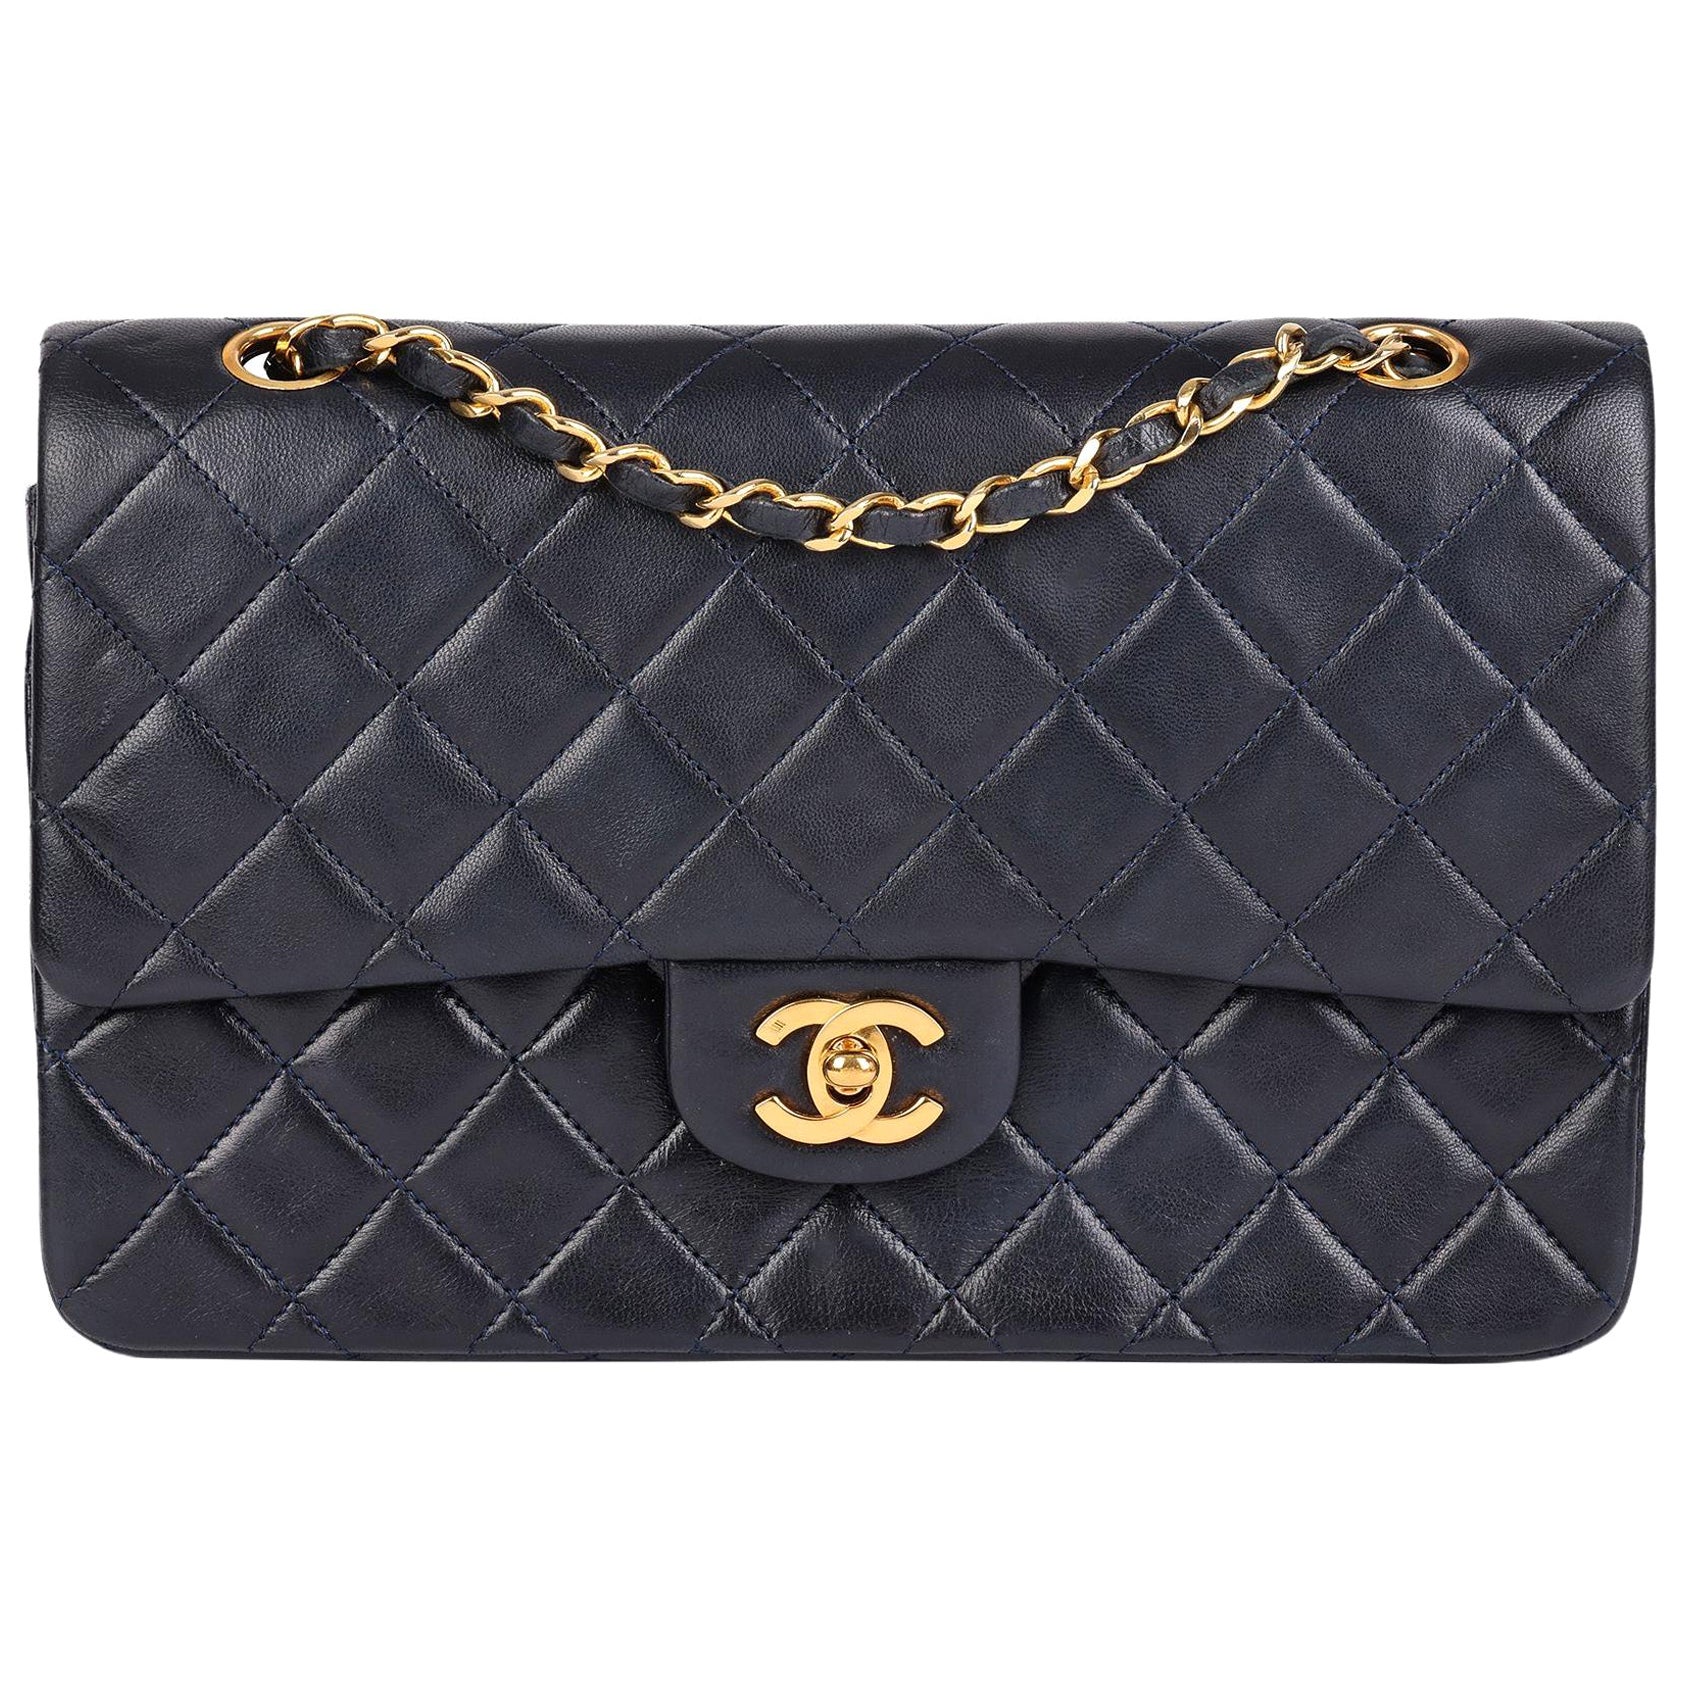 Chanel Tasche Kette Schulter schwarz gold Metallbeschläge Matelasse Fr –  Brandera Luxury Vintage